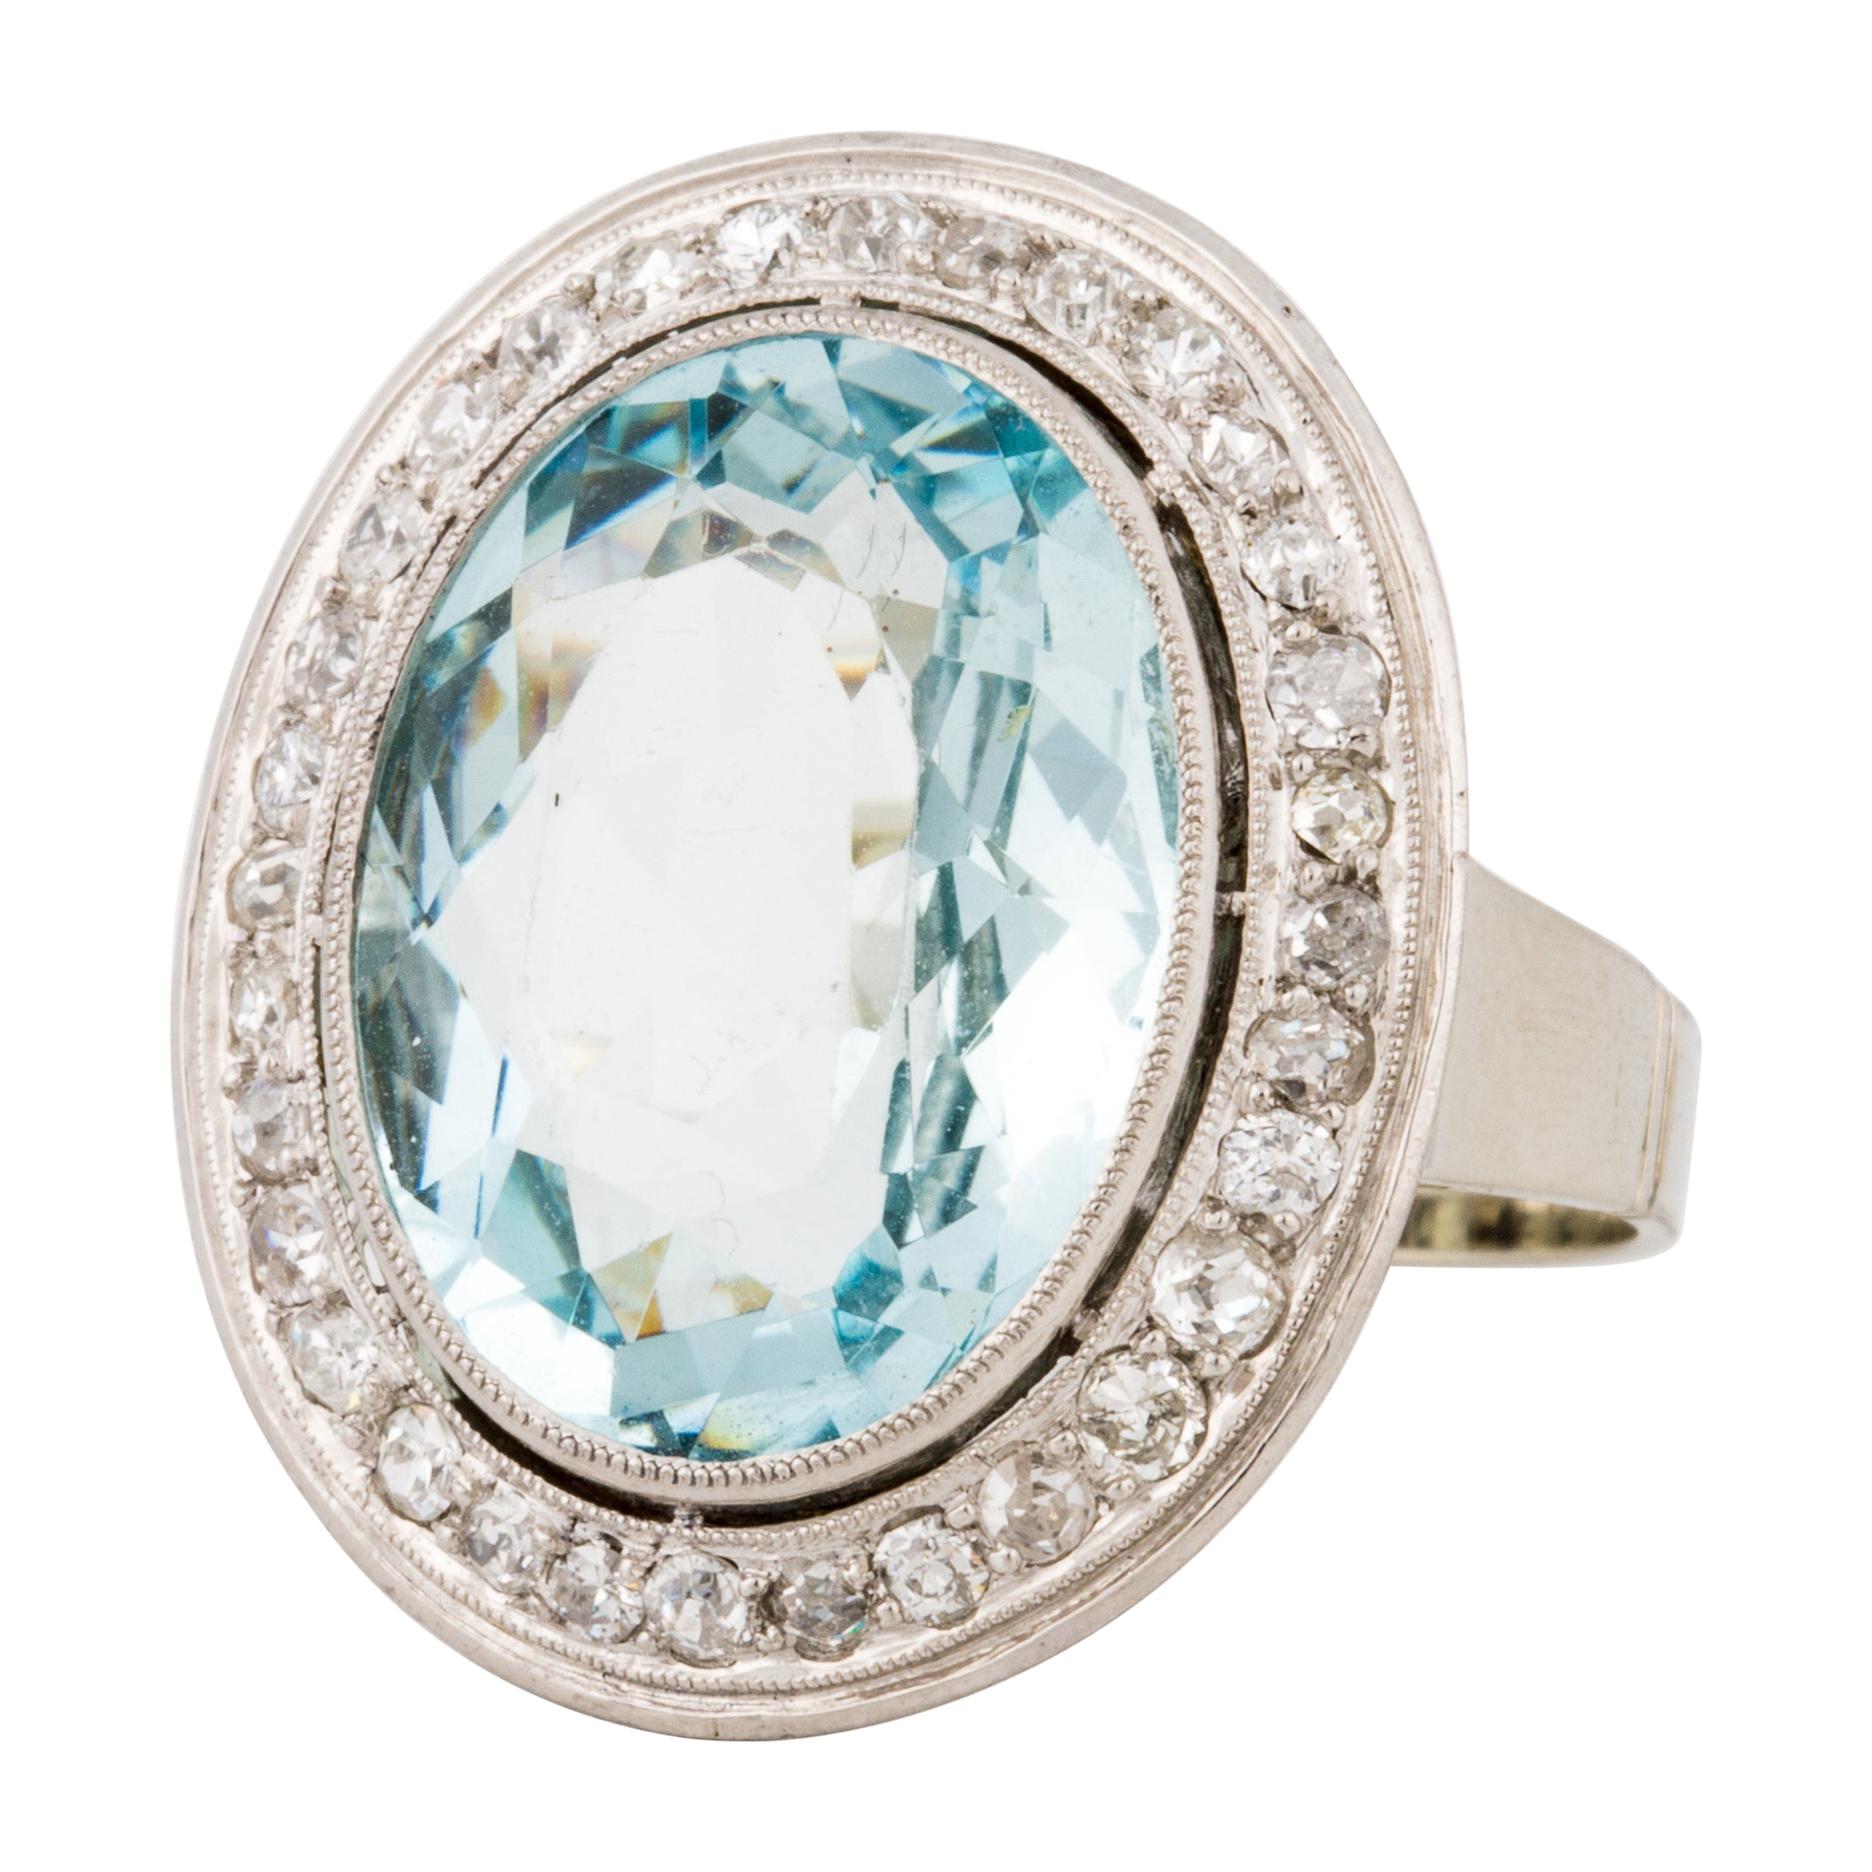 1940s Aquamarine and Diamond Ring in 18K White Gold